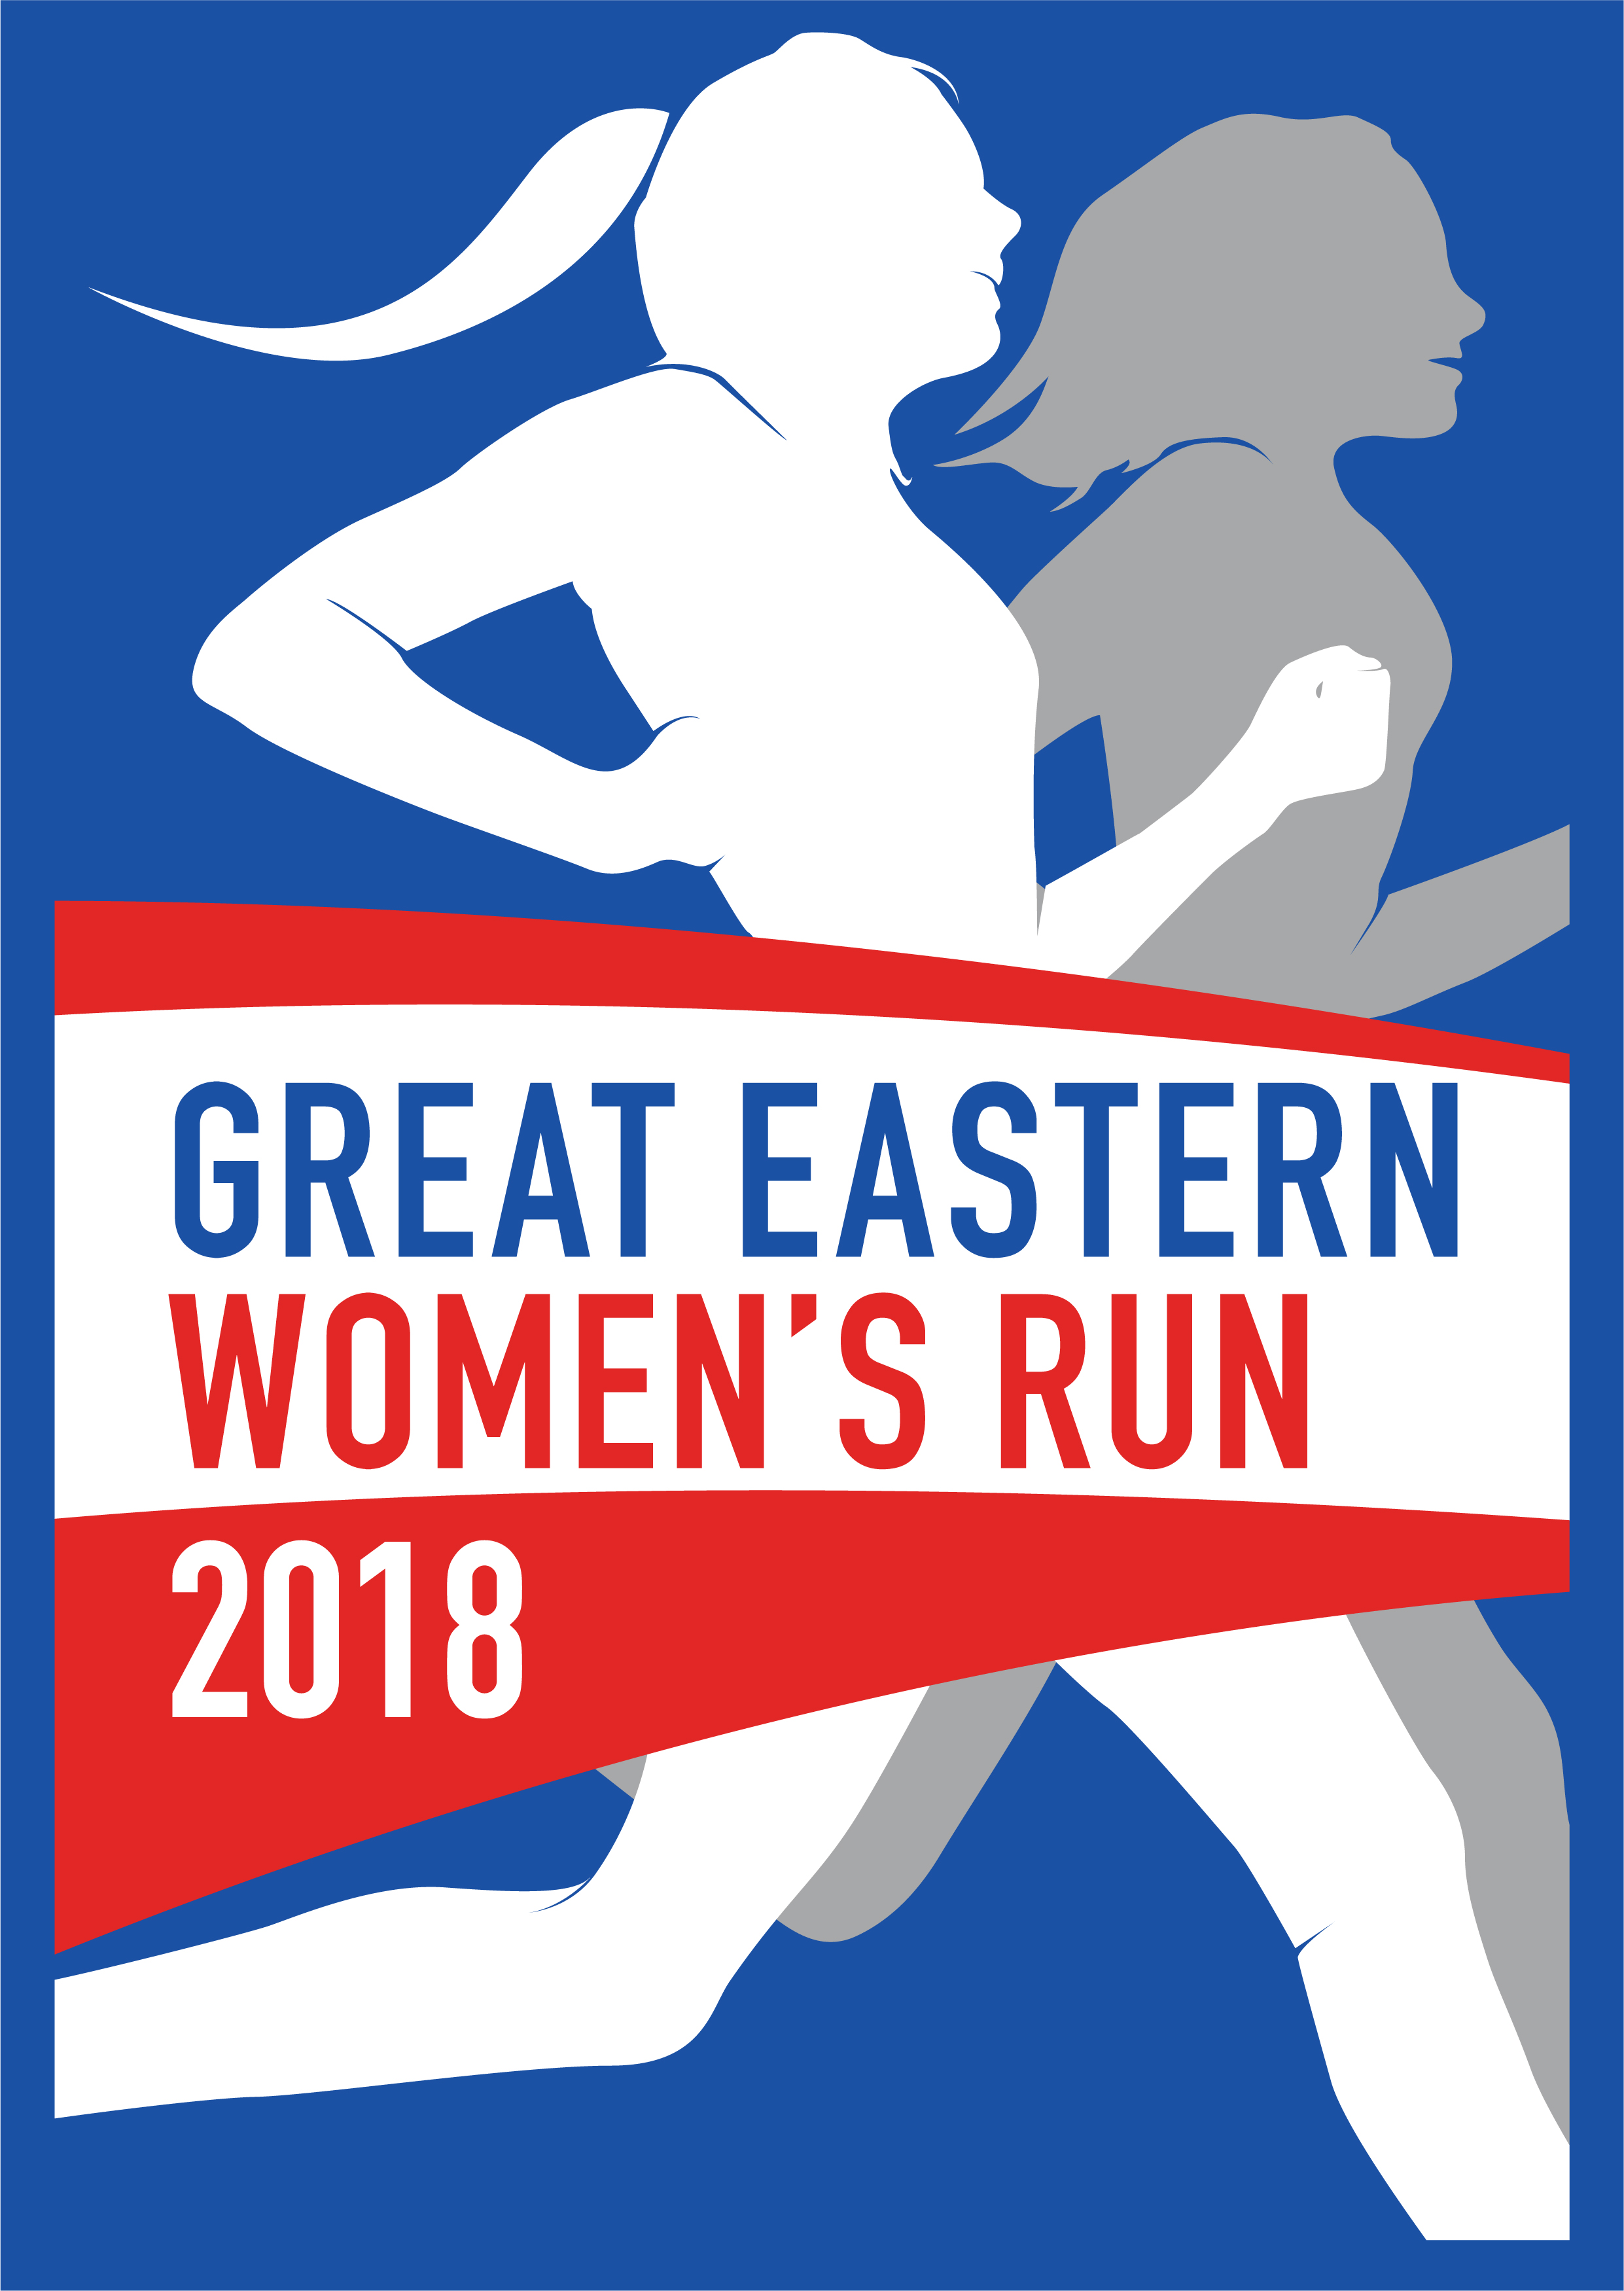 Great Eastern Woman's Run 2018